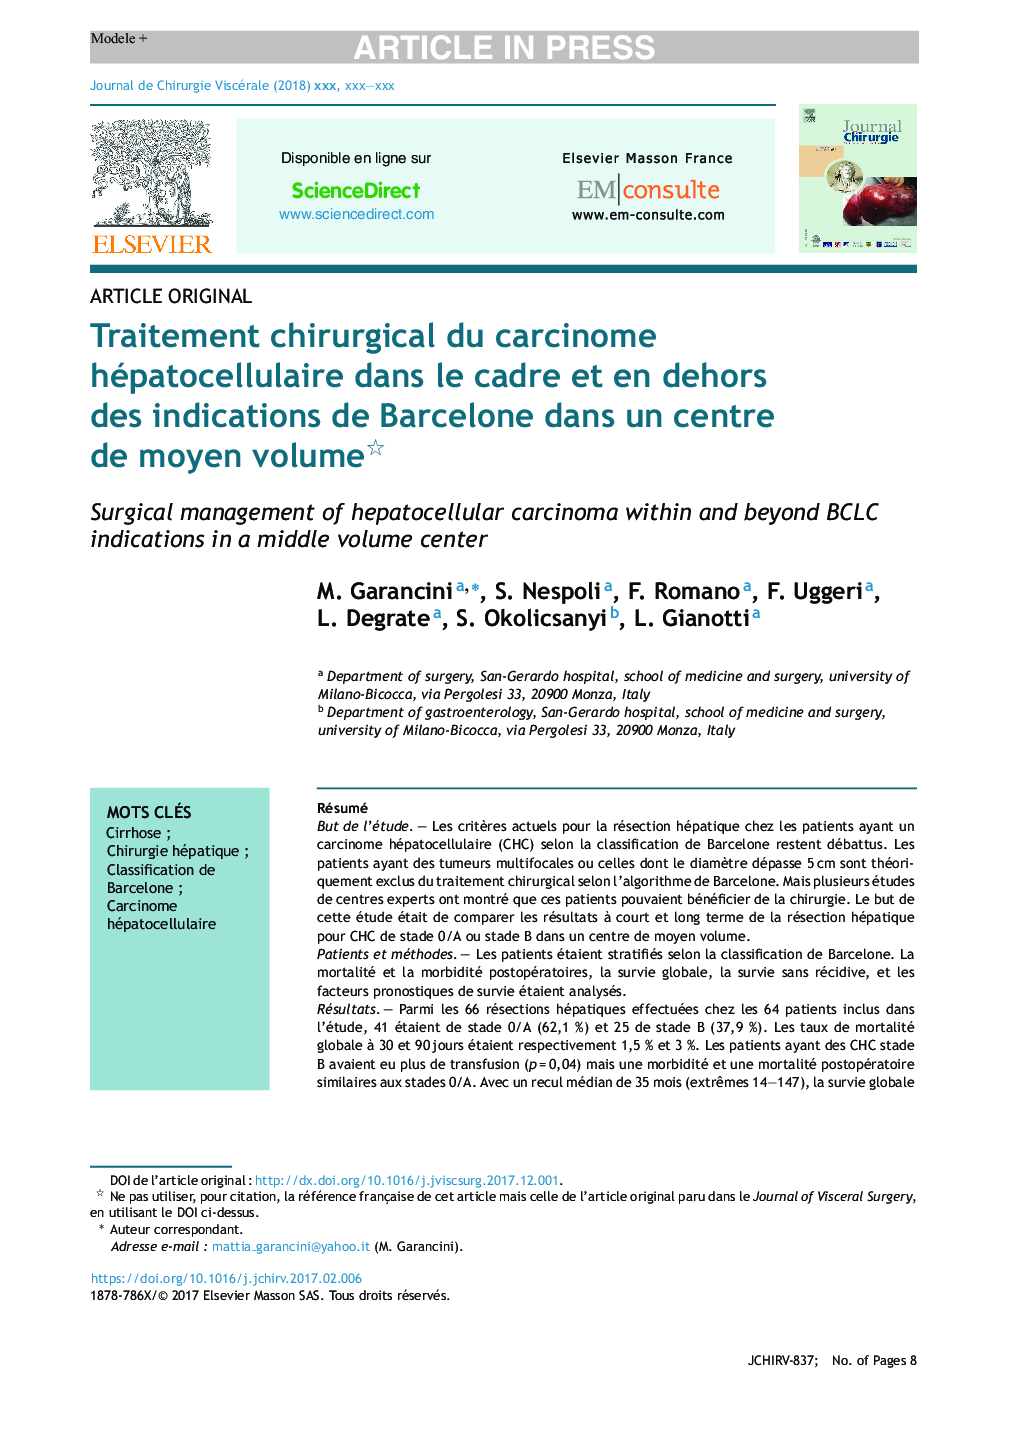 Traitement chirurgical du carcinome hépatocellulaire dans le cadre et en dehors des indications de Barcelone dans un centre de moyen volume